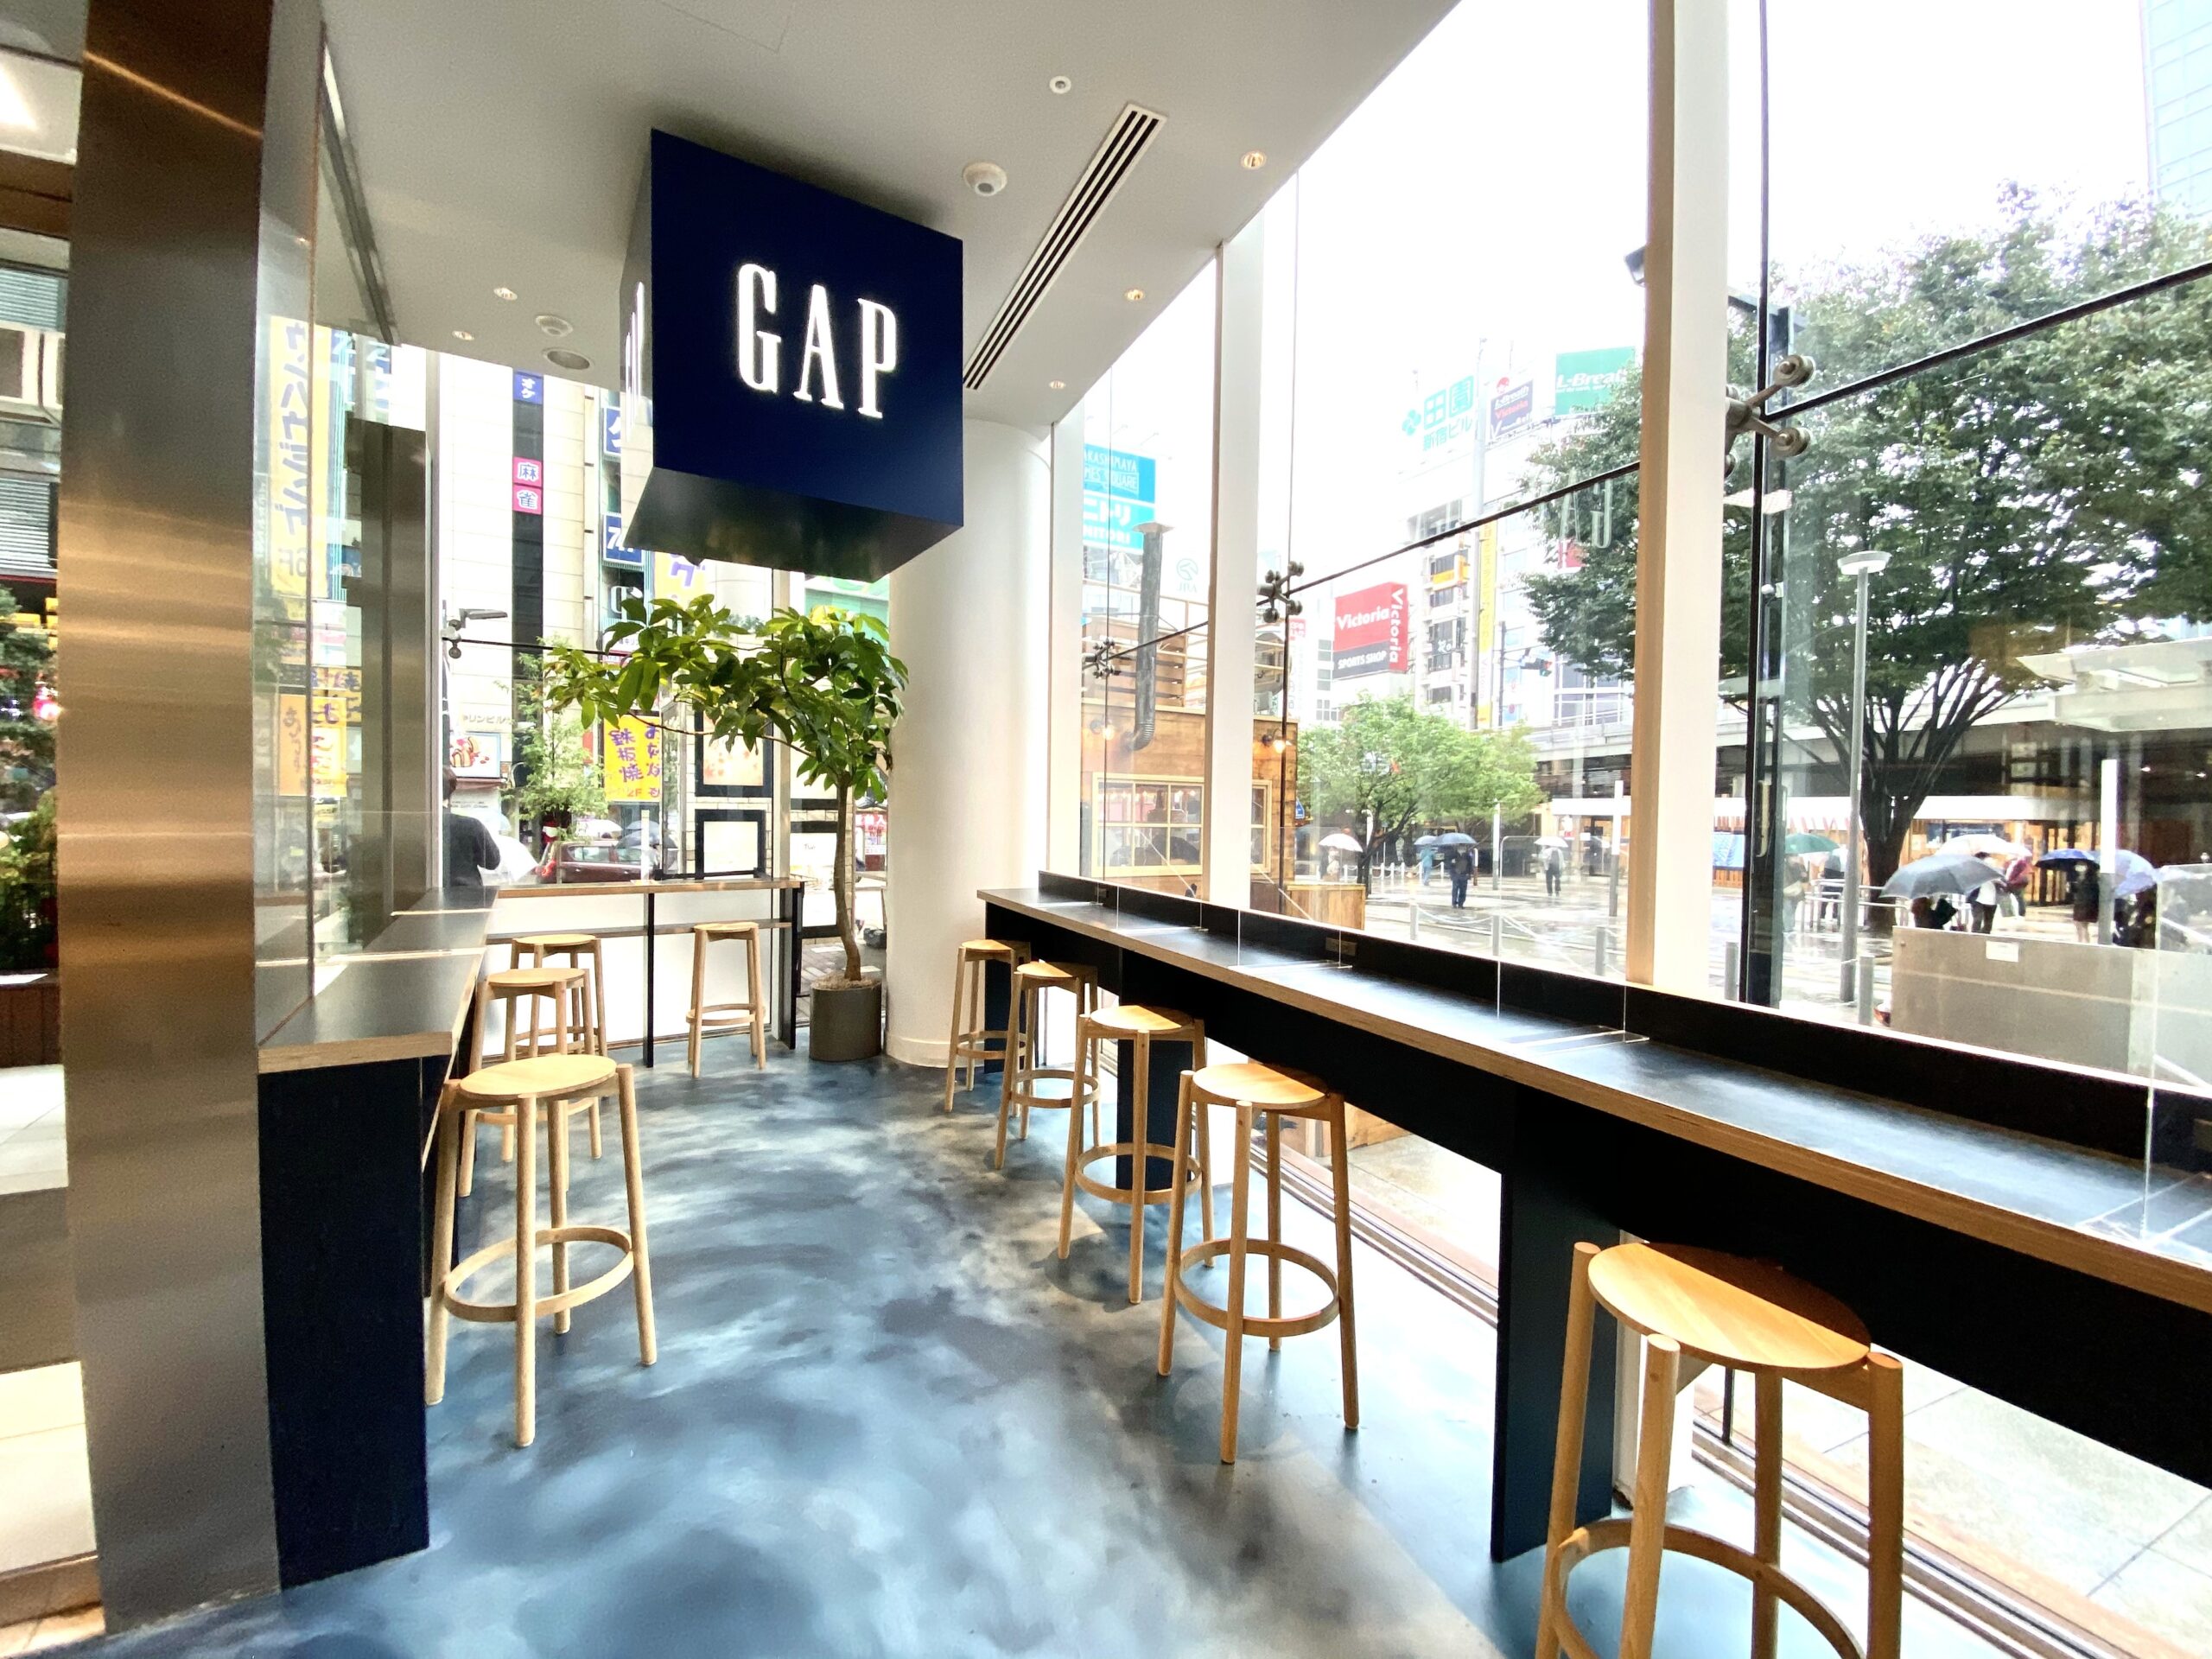 ブルートラベルエンジニア パソコン作業（プログラミング学習環境）におすすめのカフェ|新宿・高田馬場 Gap cafe（ギャップカフェ）